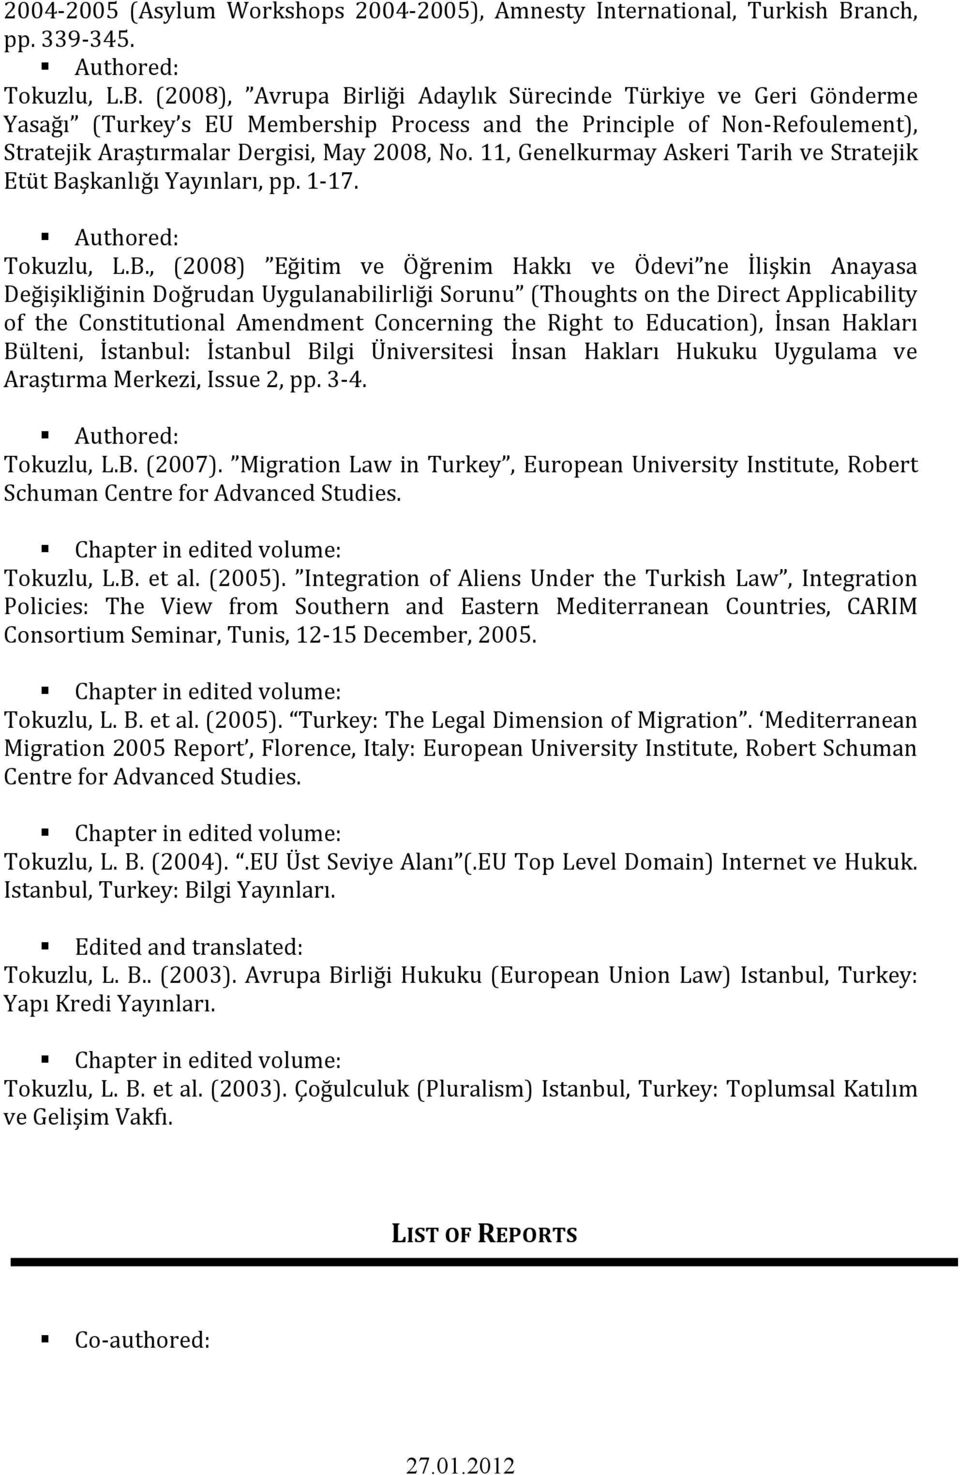 (2008), Avrupa Birliği Adaylık Sürecinde Türkiye ve Geri Gönderme Yasağı (Turkey s EU Membership Process and the Principle of Non- Refoulement), Stratejik Araştırmalar Dergisi, May 2008, No.